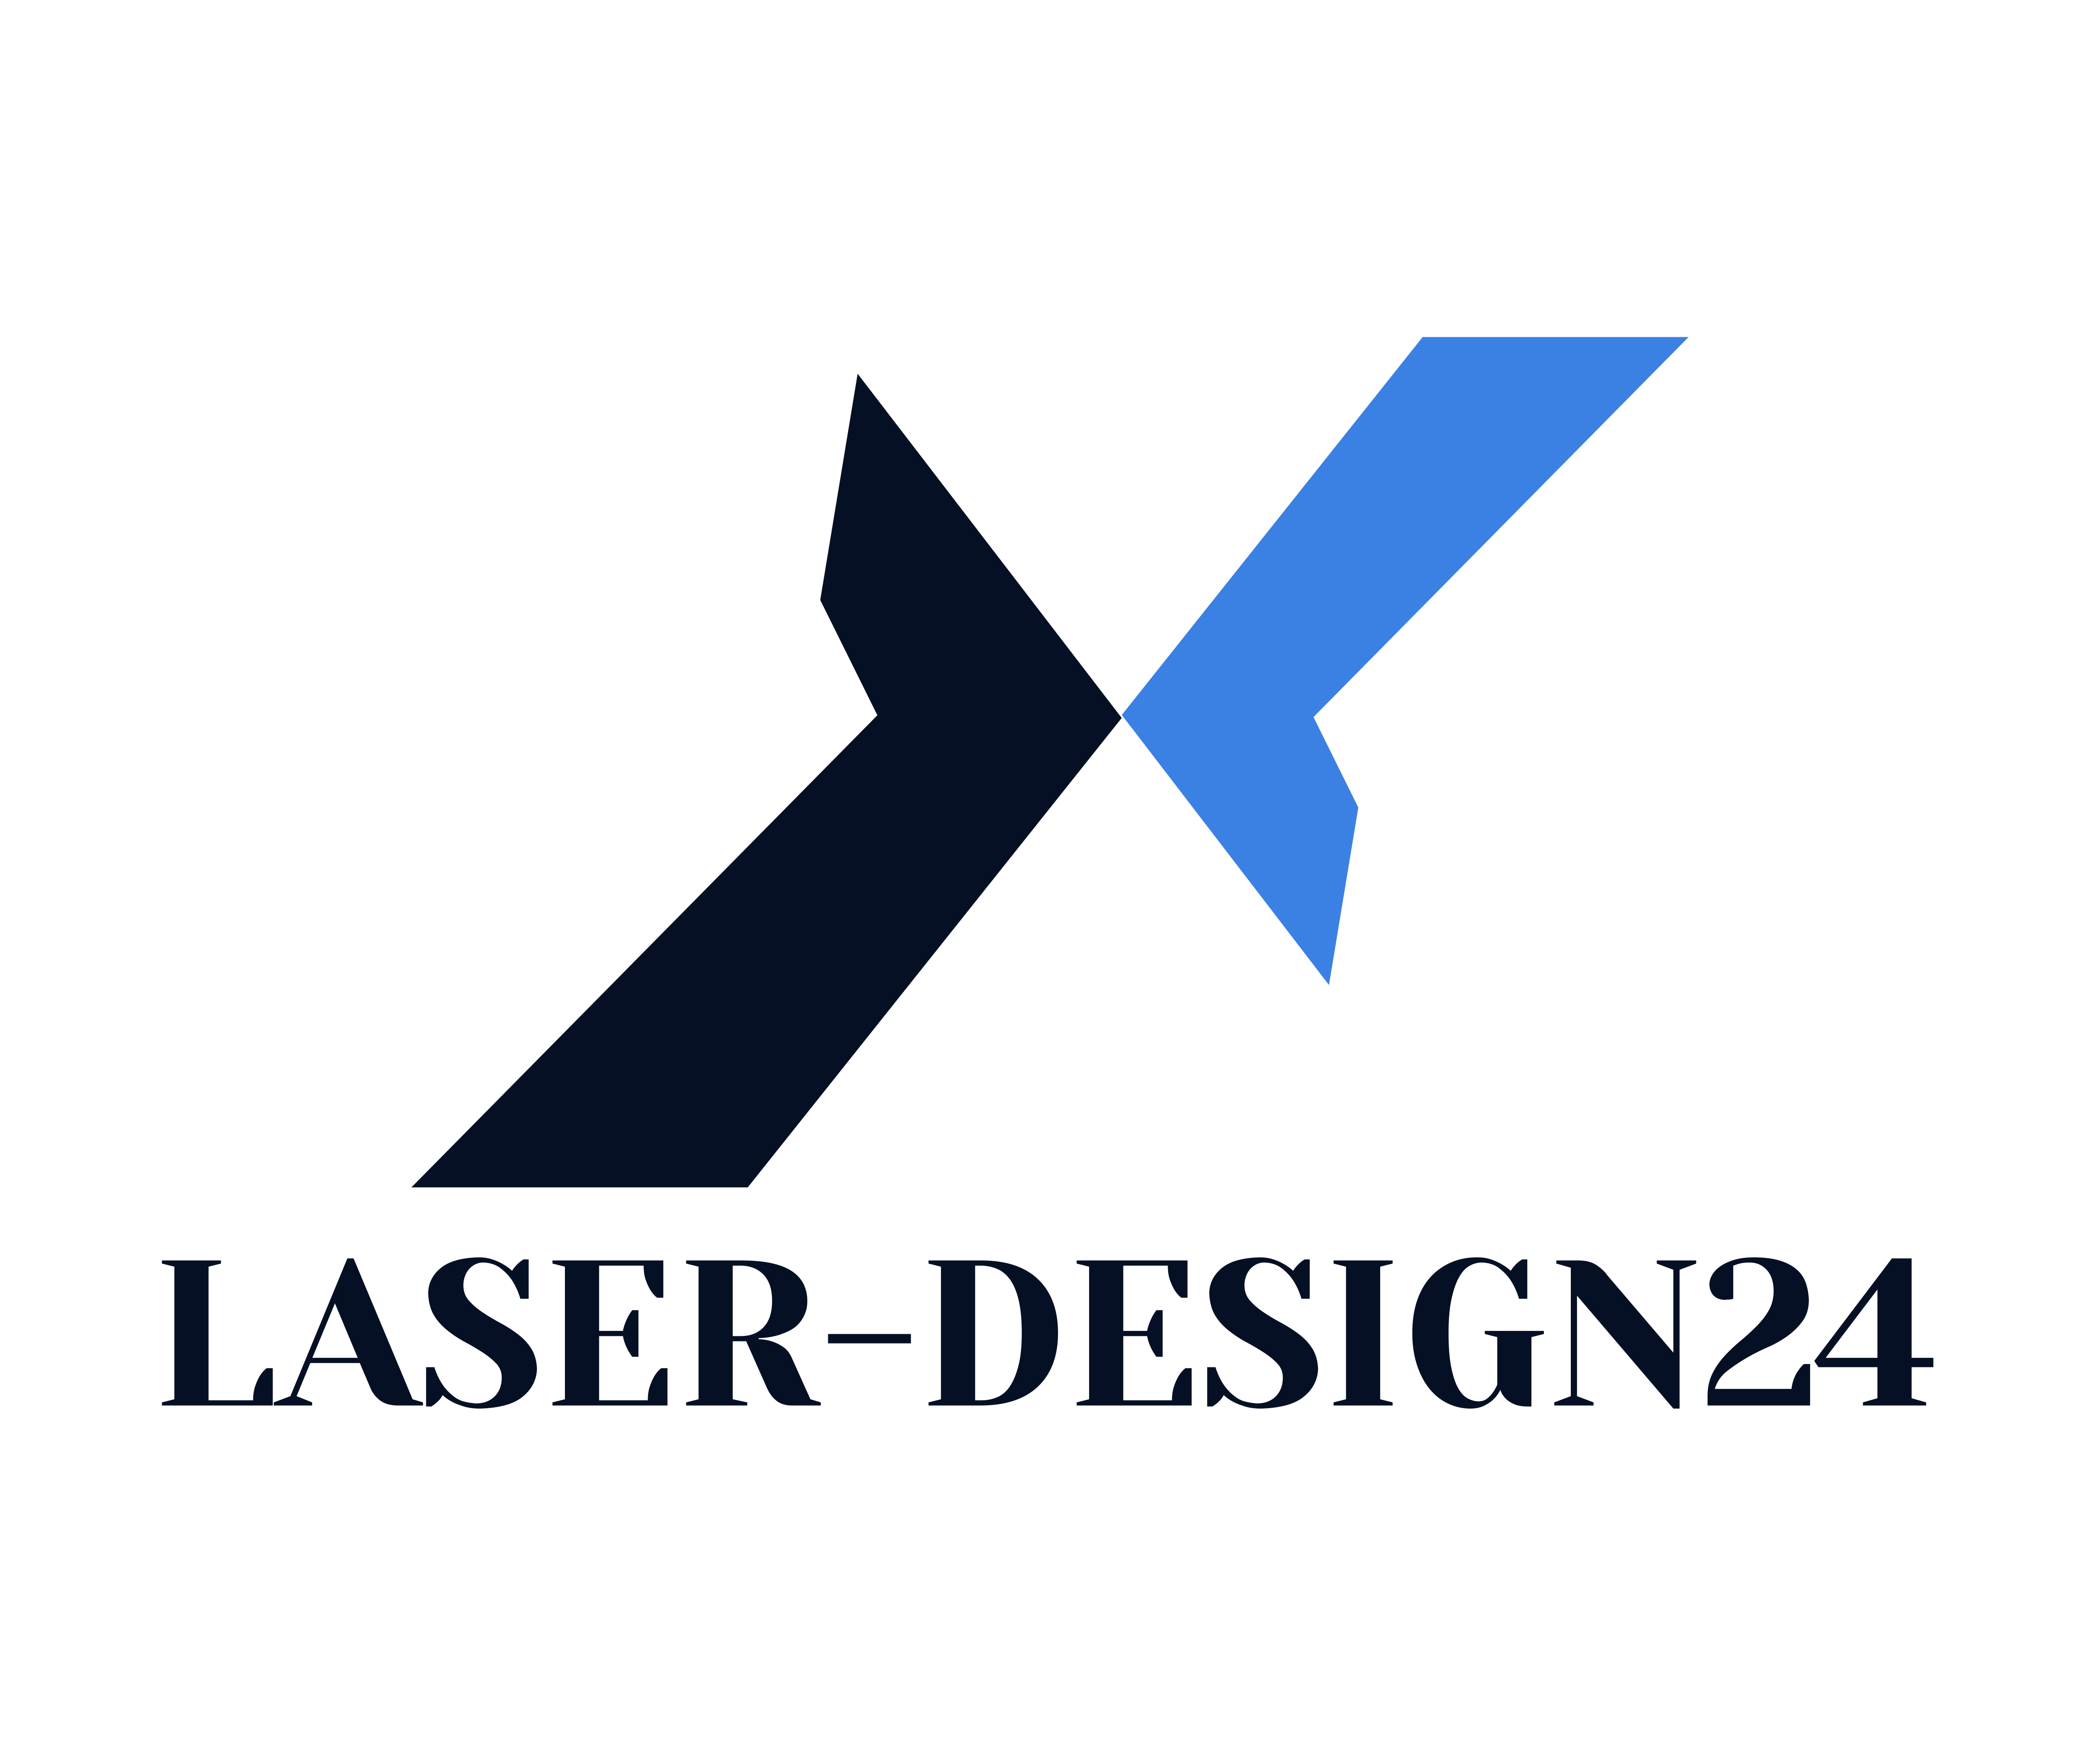 Laser-Design24